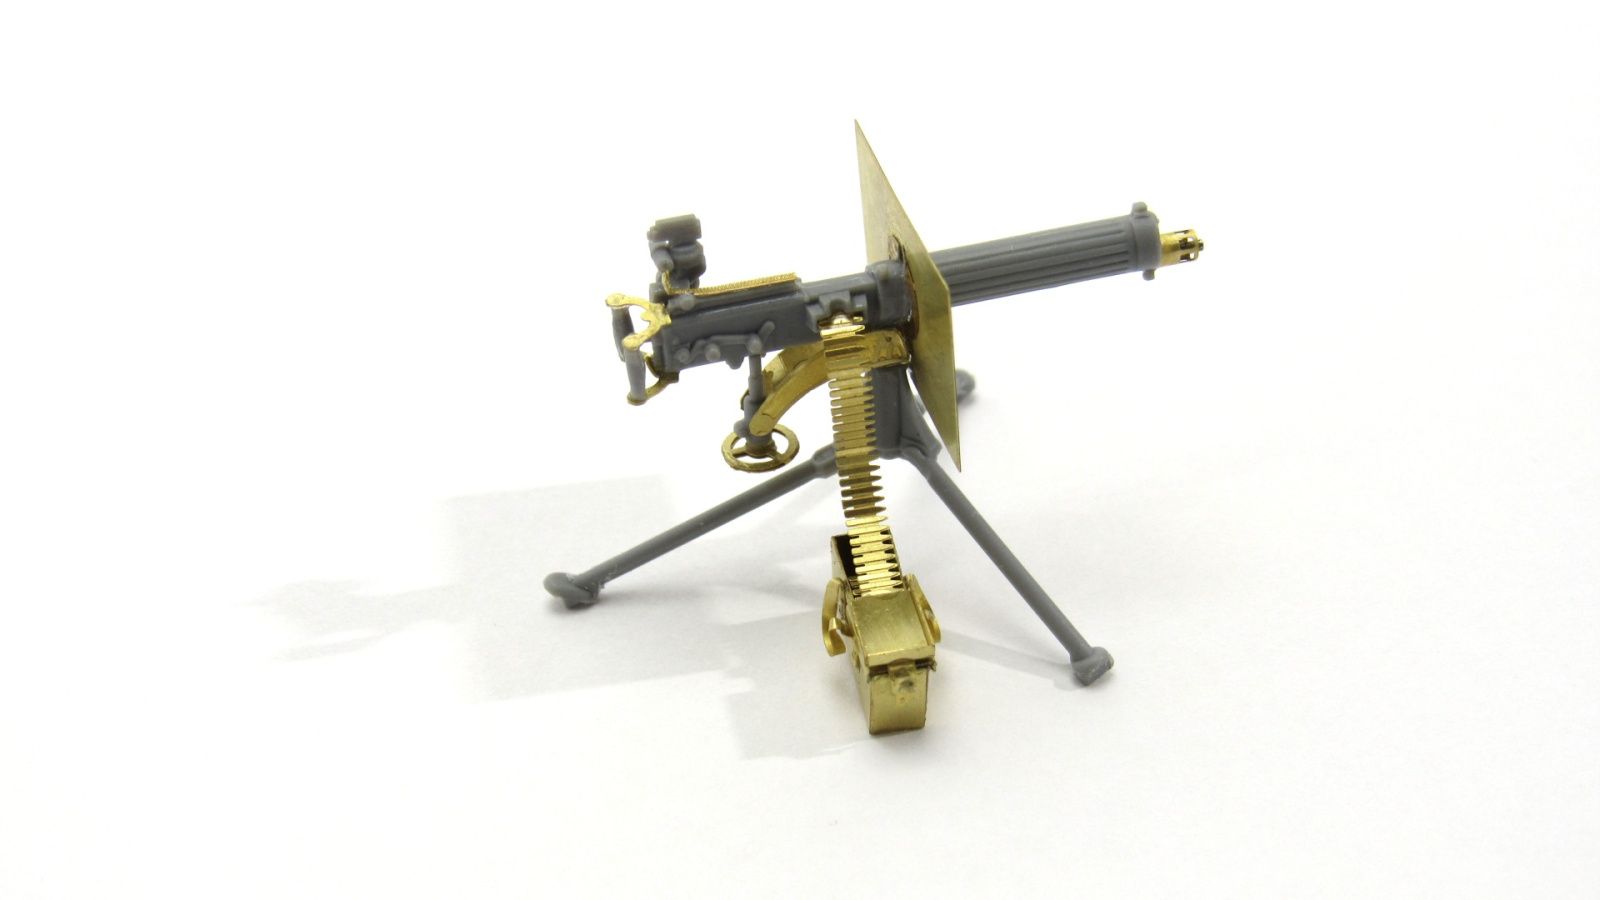 Vickers machine gun (ICM) - imodeller.store